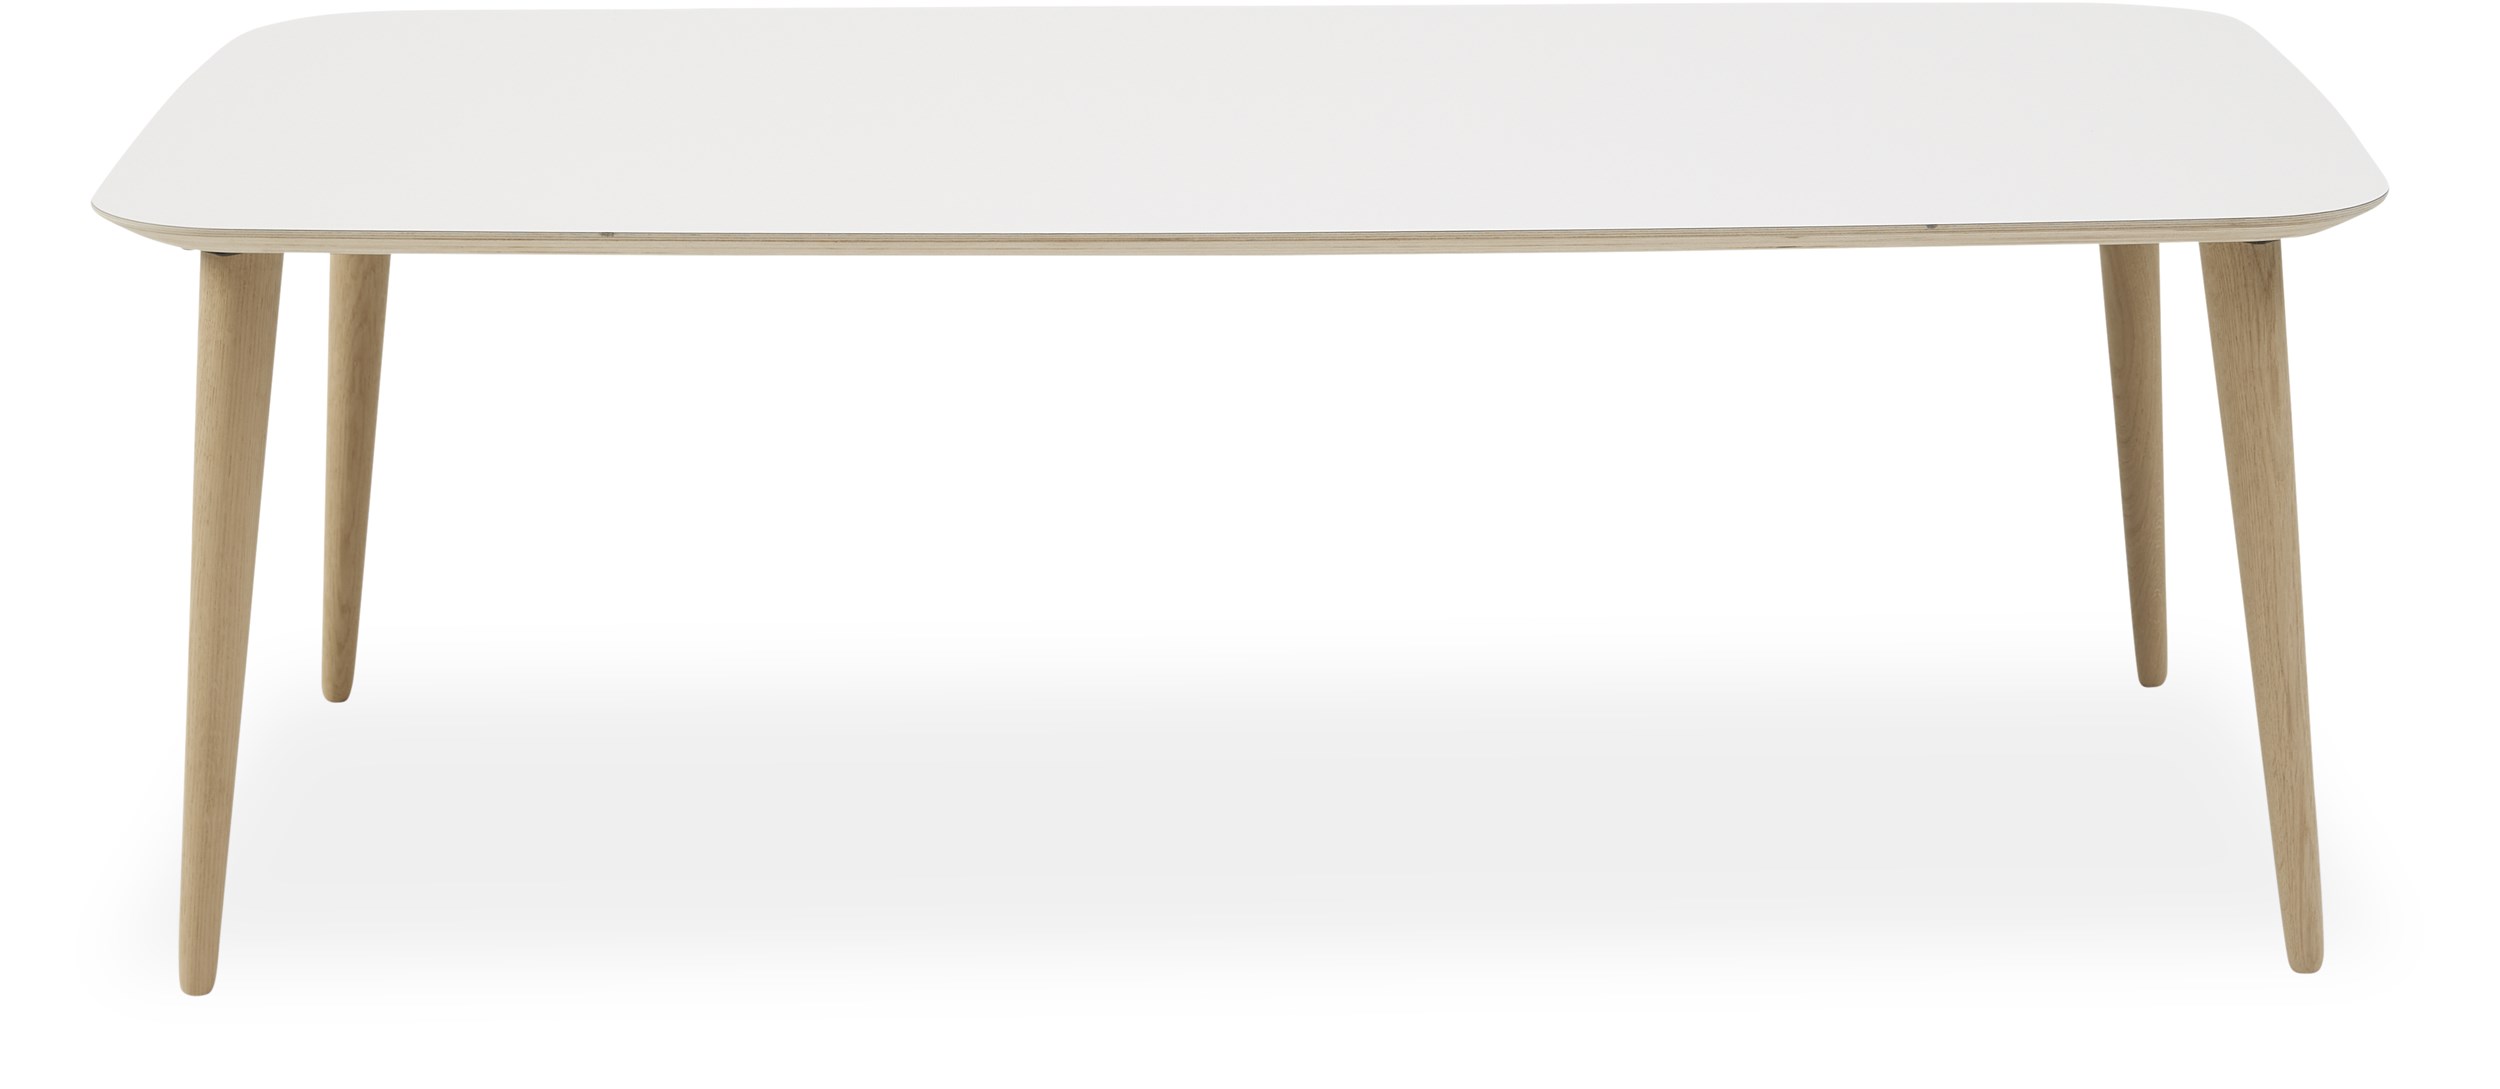 Norton Soffbord 68 x 45 x 128 cm - Ovandel i vitt KER-laminat, kryssfaner och ben i obehandlad massiv ek